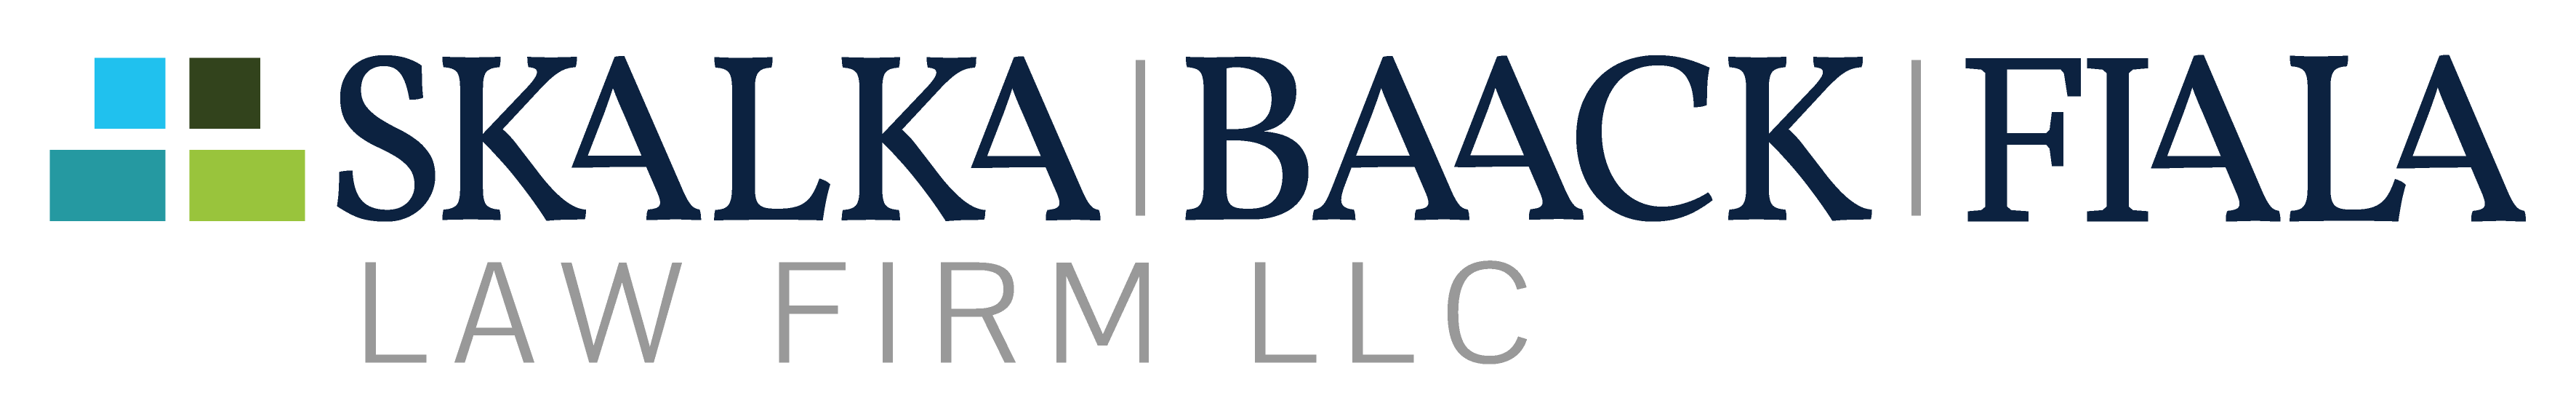 skalka baack fiala law firm logo